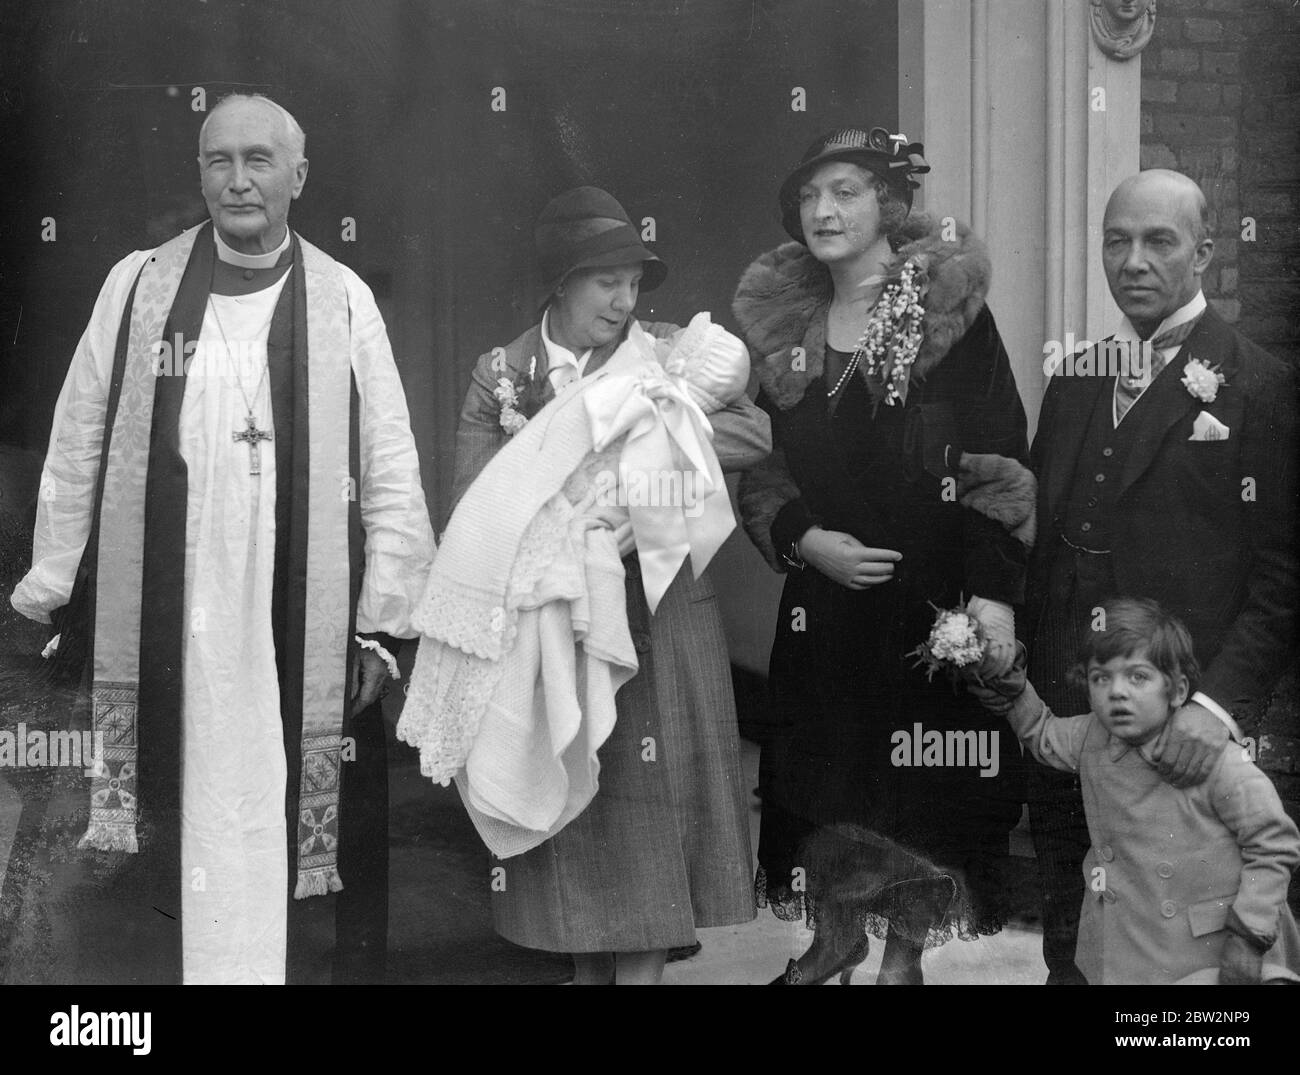 L'évêque de Londres officie au baptême du bébé du spécialiste de la gorge . L'évêque de Londres, le Dr Winnington Ingram , a officié au baptême de la fille de M. Cyril Horsford , le spécialiste de la gorge , qui s'est déroulé au Palais Fulham , Londres , la résidence de l'évêque . Sir Herbert Barker était parmi les parrains . Les parents avec le bébé et l'évêque de Londres après la cérémonie au Palais Fulham . Le bébé a été baptisé Pamela Ann . 15 février 1932 Banque D'Images